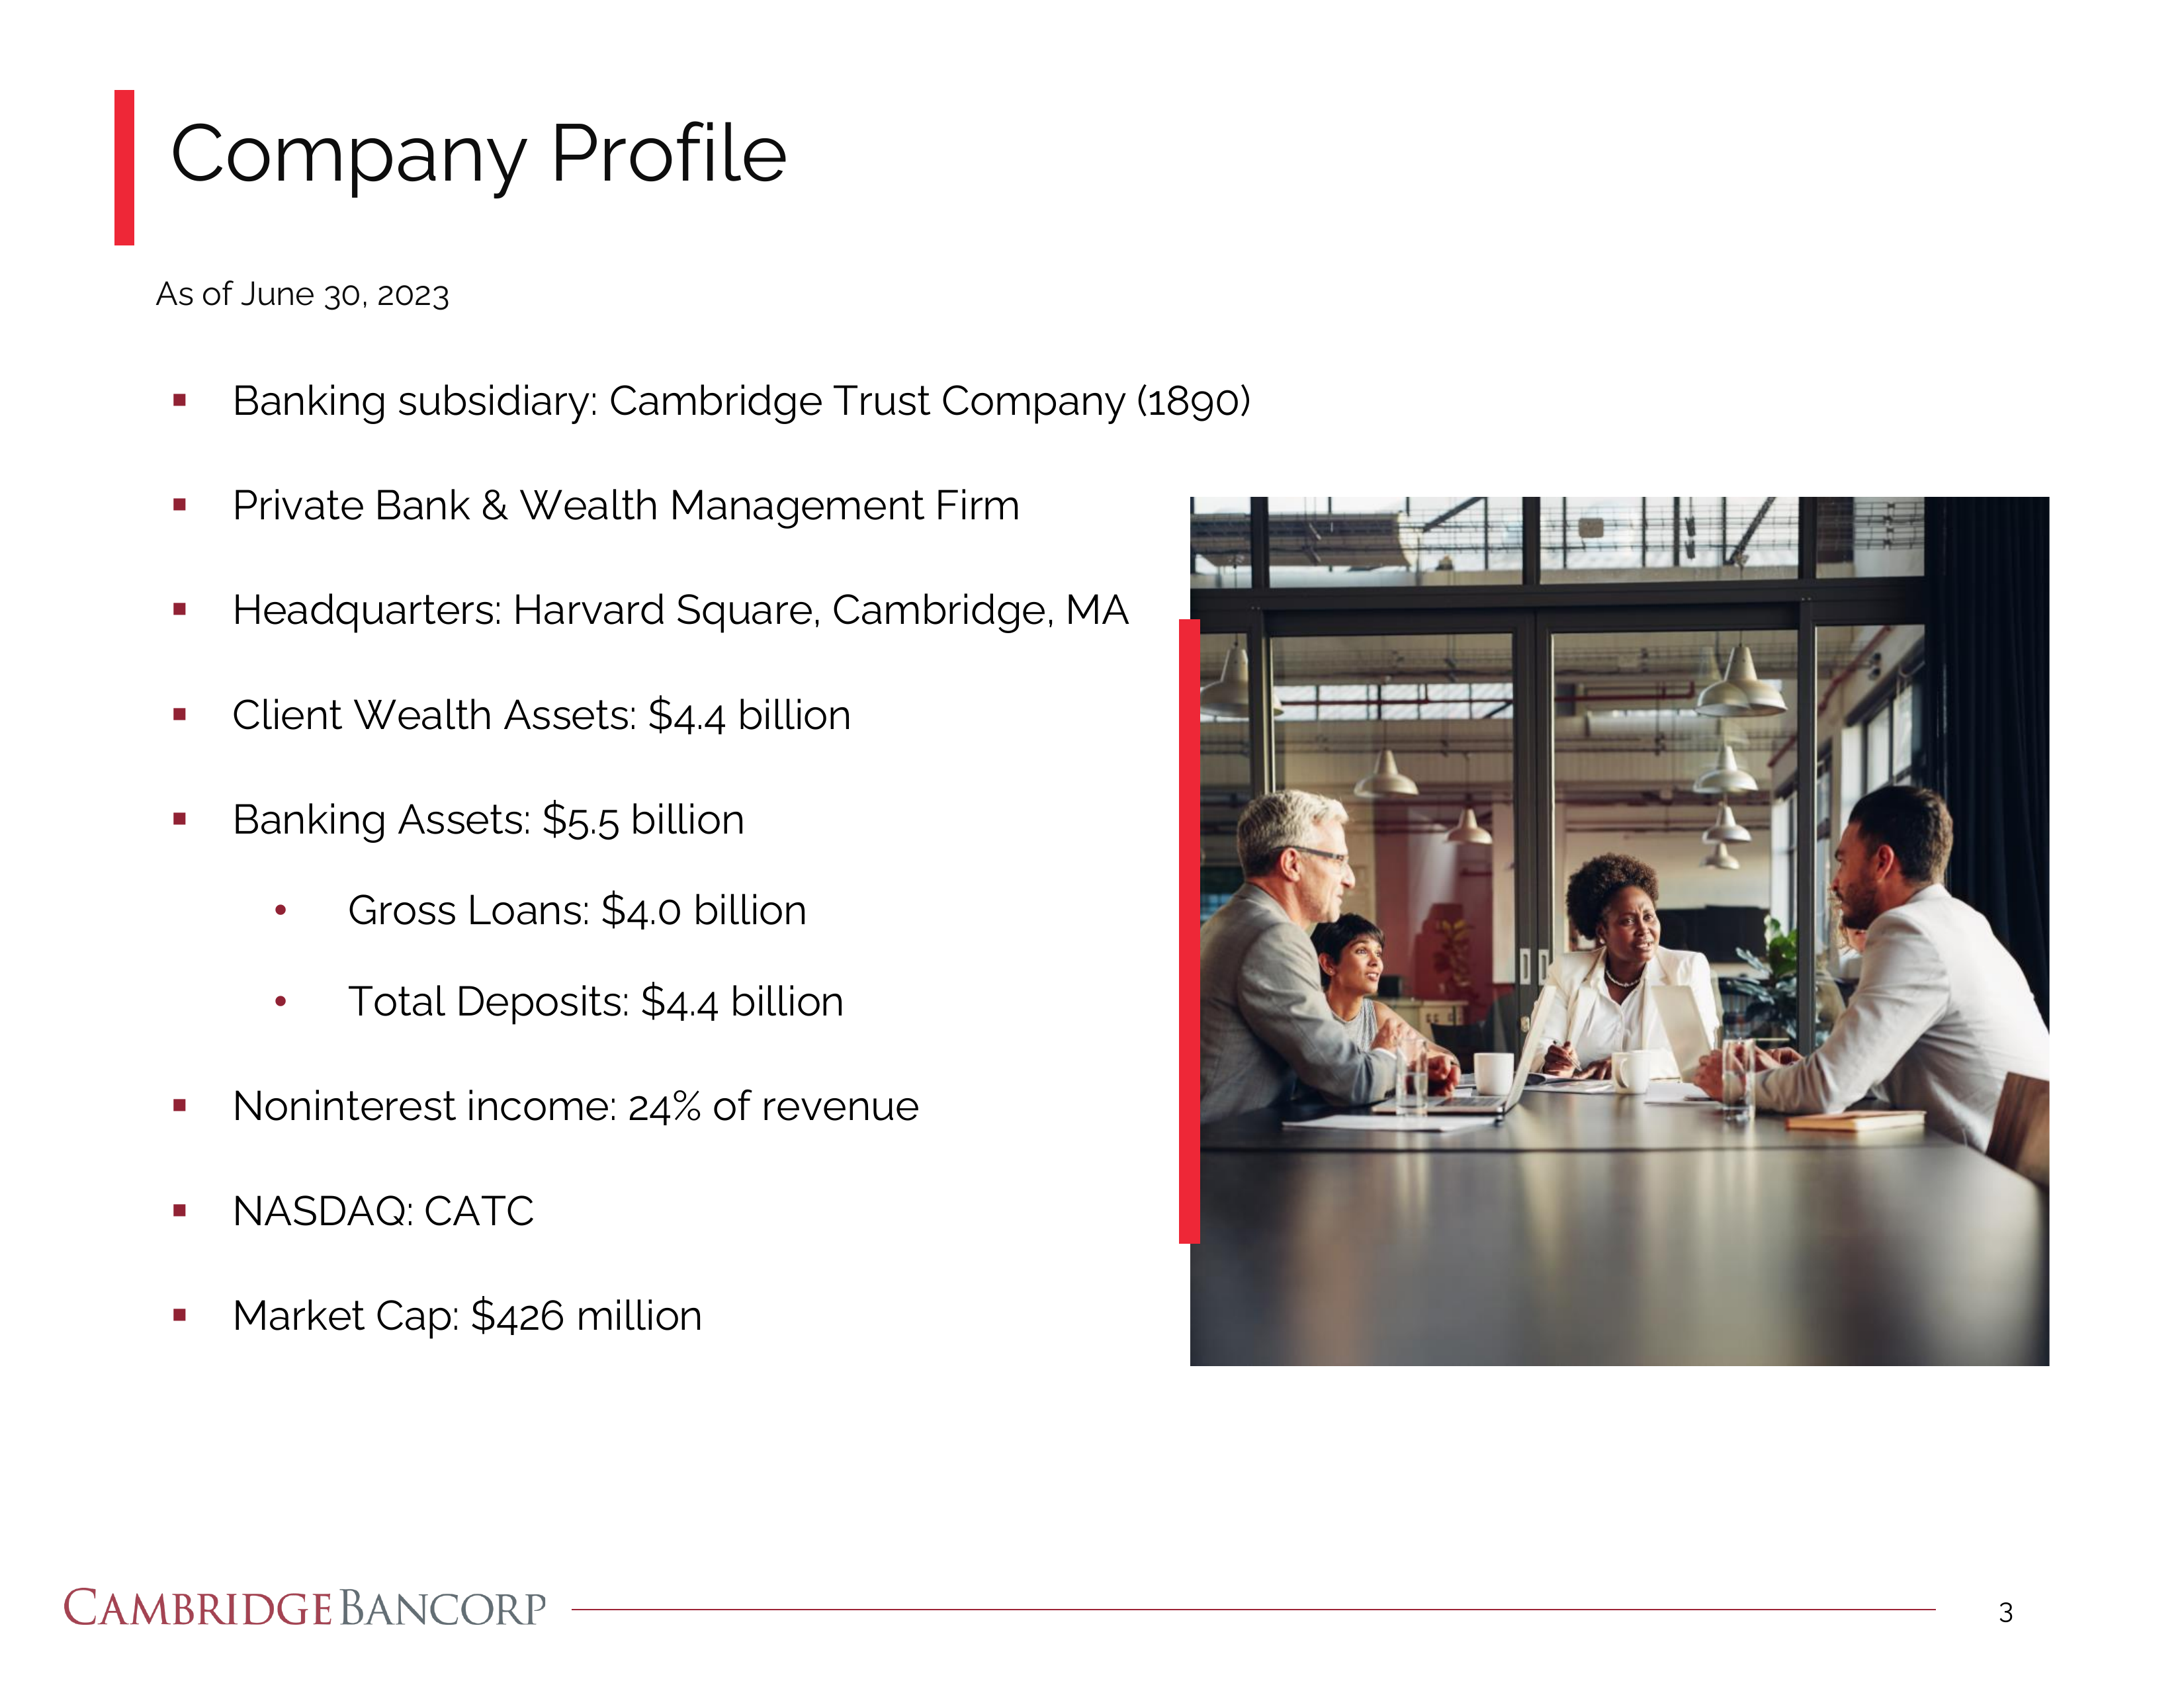 Company Profile 

As